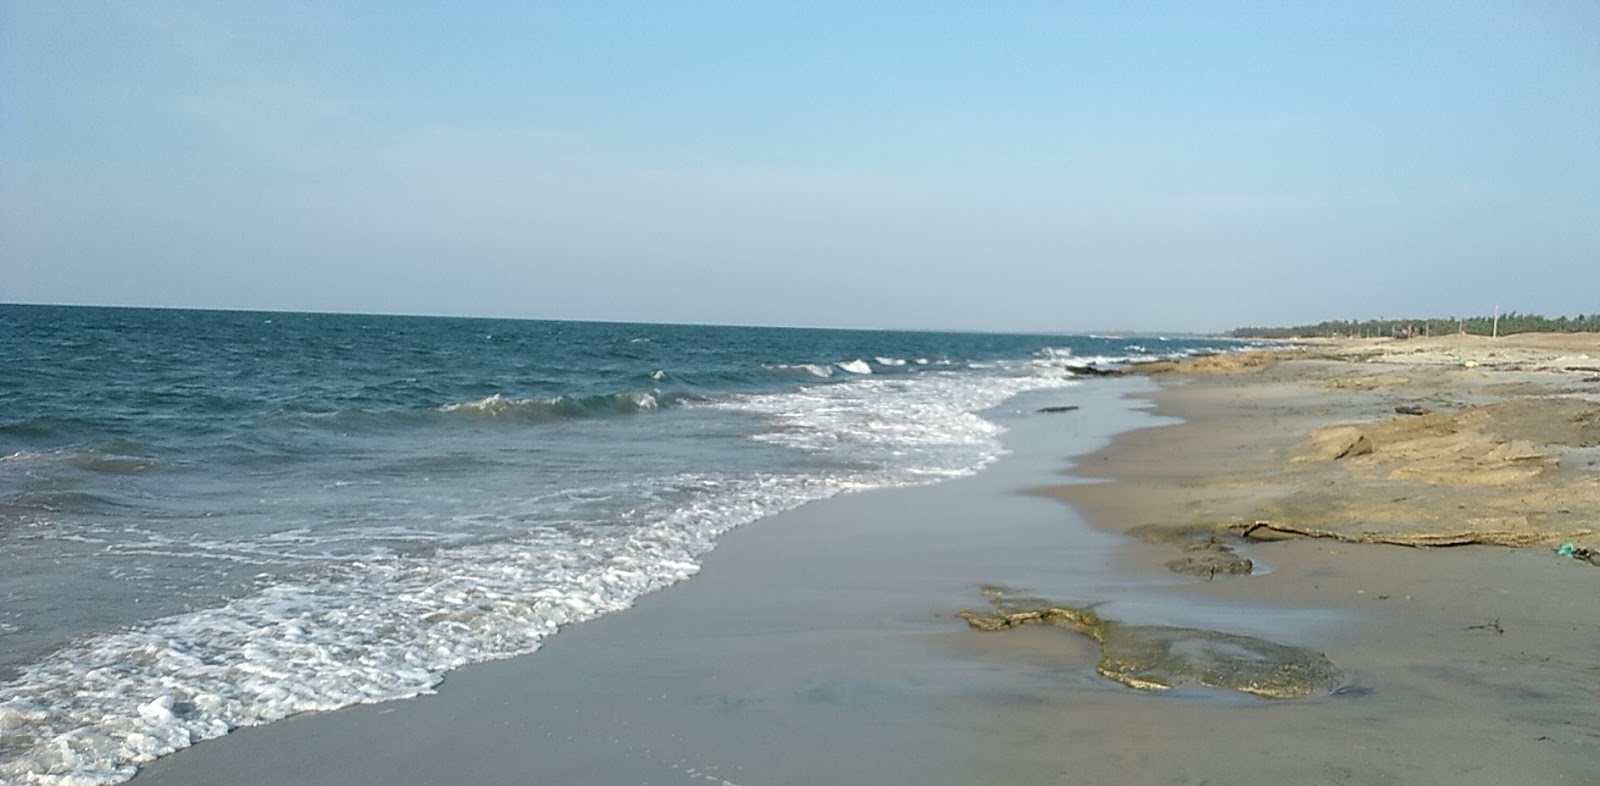 Pudumadam Beach'in fotoğrafı parlak kum yüzey ile